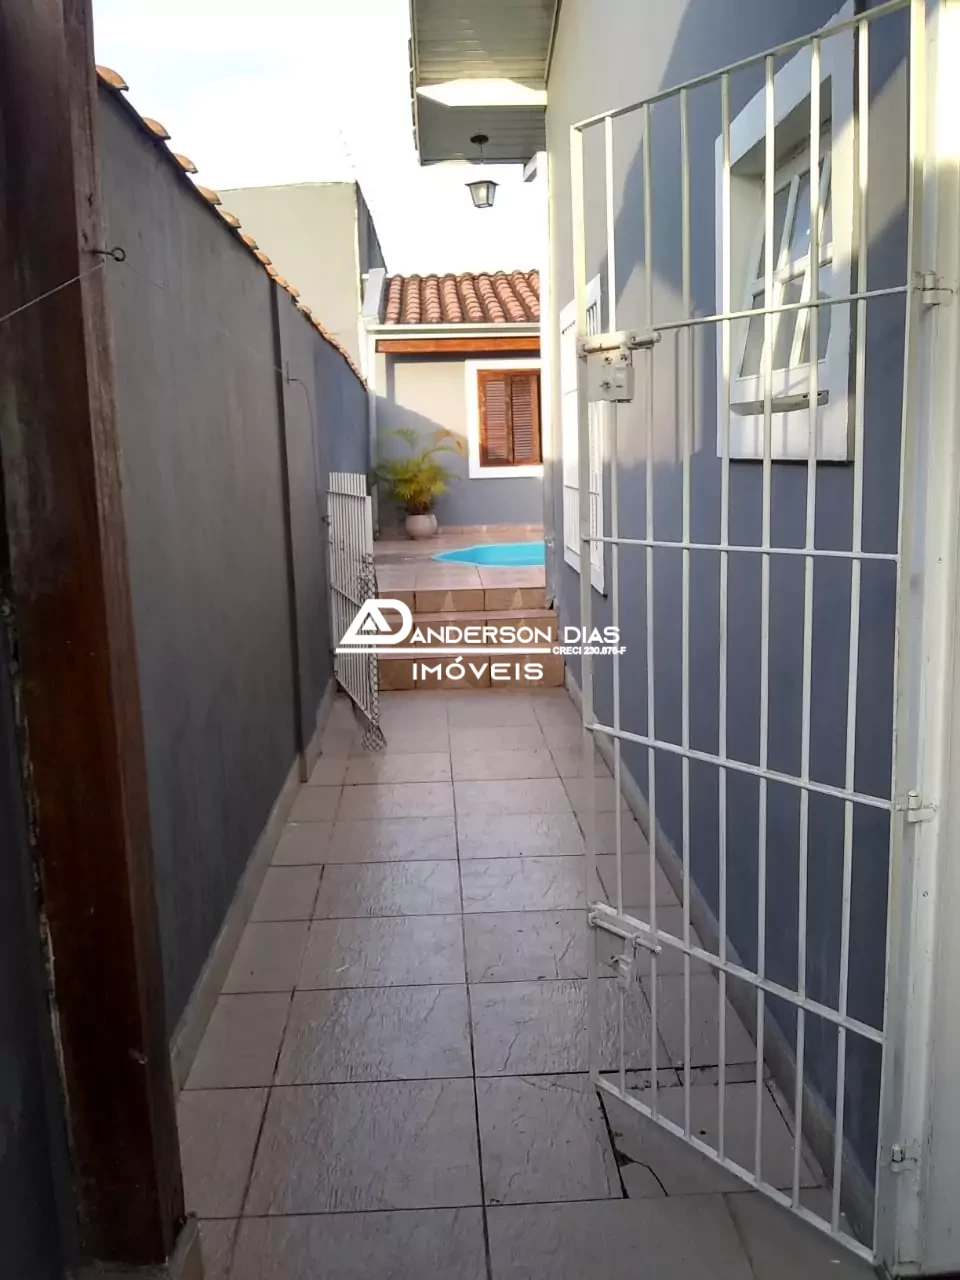 Casa a venda no Bairro Martim de Sá com 2 Dormitórios, 1 Suíte, Piscina e Edícula por R$ 790 mil- Caraguatatuba-SP